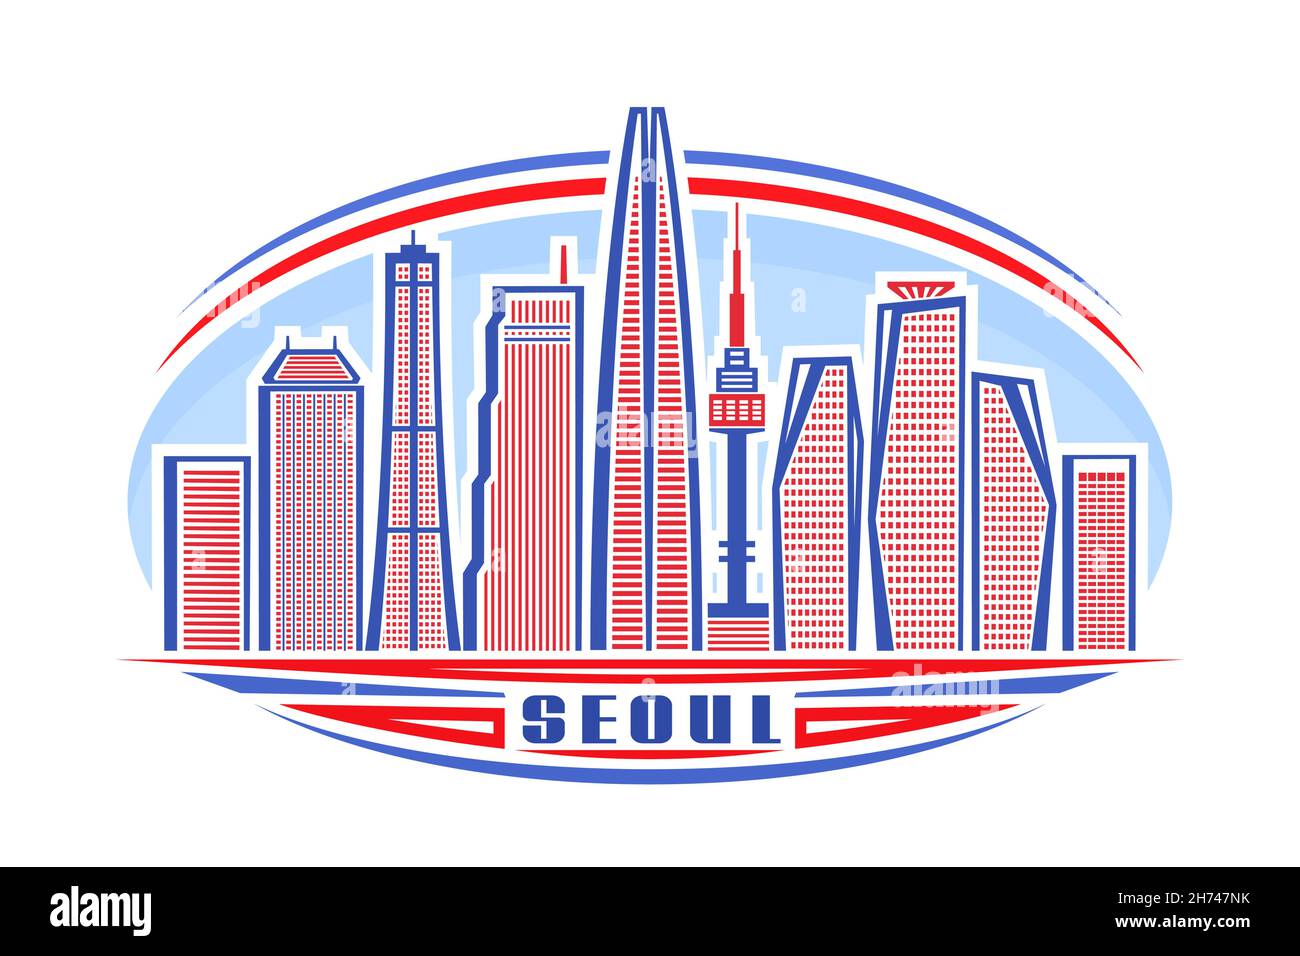 Vektor-Illustration von Seoul, horizontales Logo mit linearem Design berühmte seoul Stadtbild auf Tageshimmel Hintergrund, asiatische Urban Line Art-Konzept mit Deko Stock Vektor